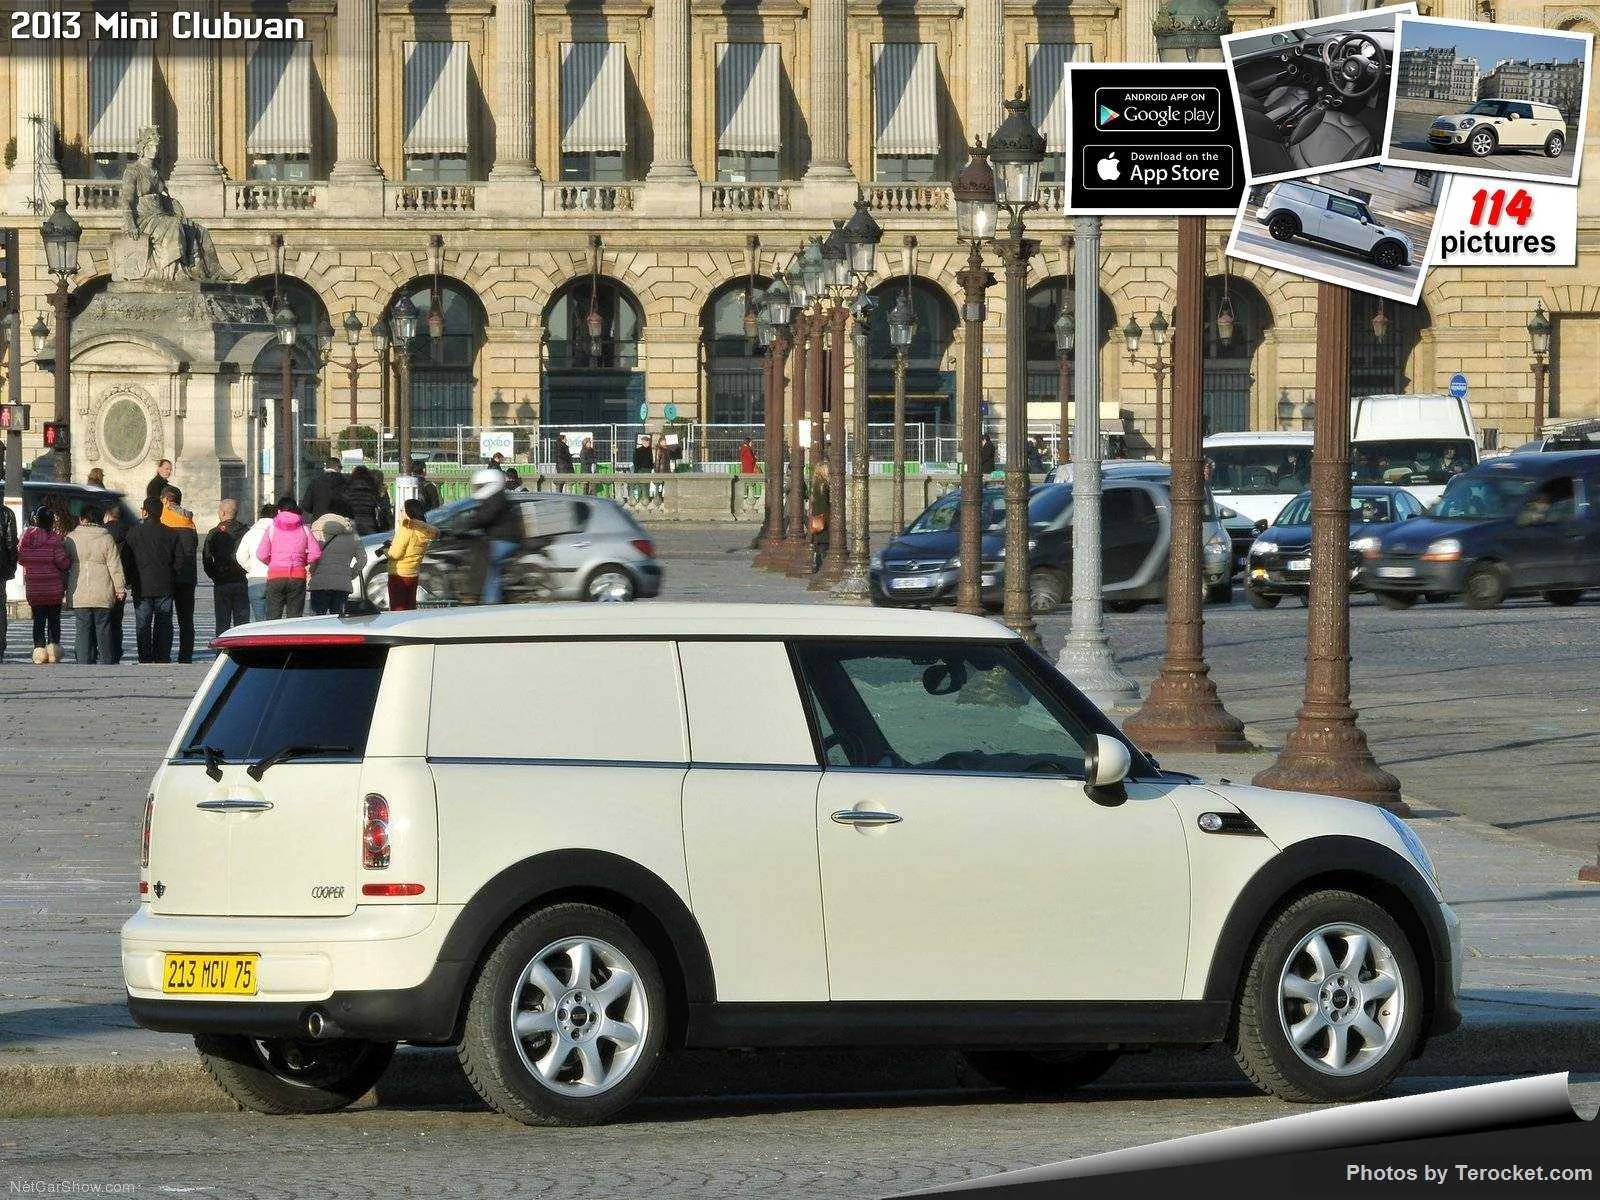 Hình ảnh xe ô tô Mini Clubvan 2013 & nội ngoại thất